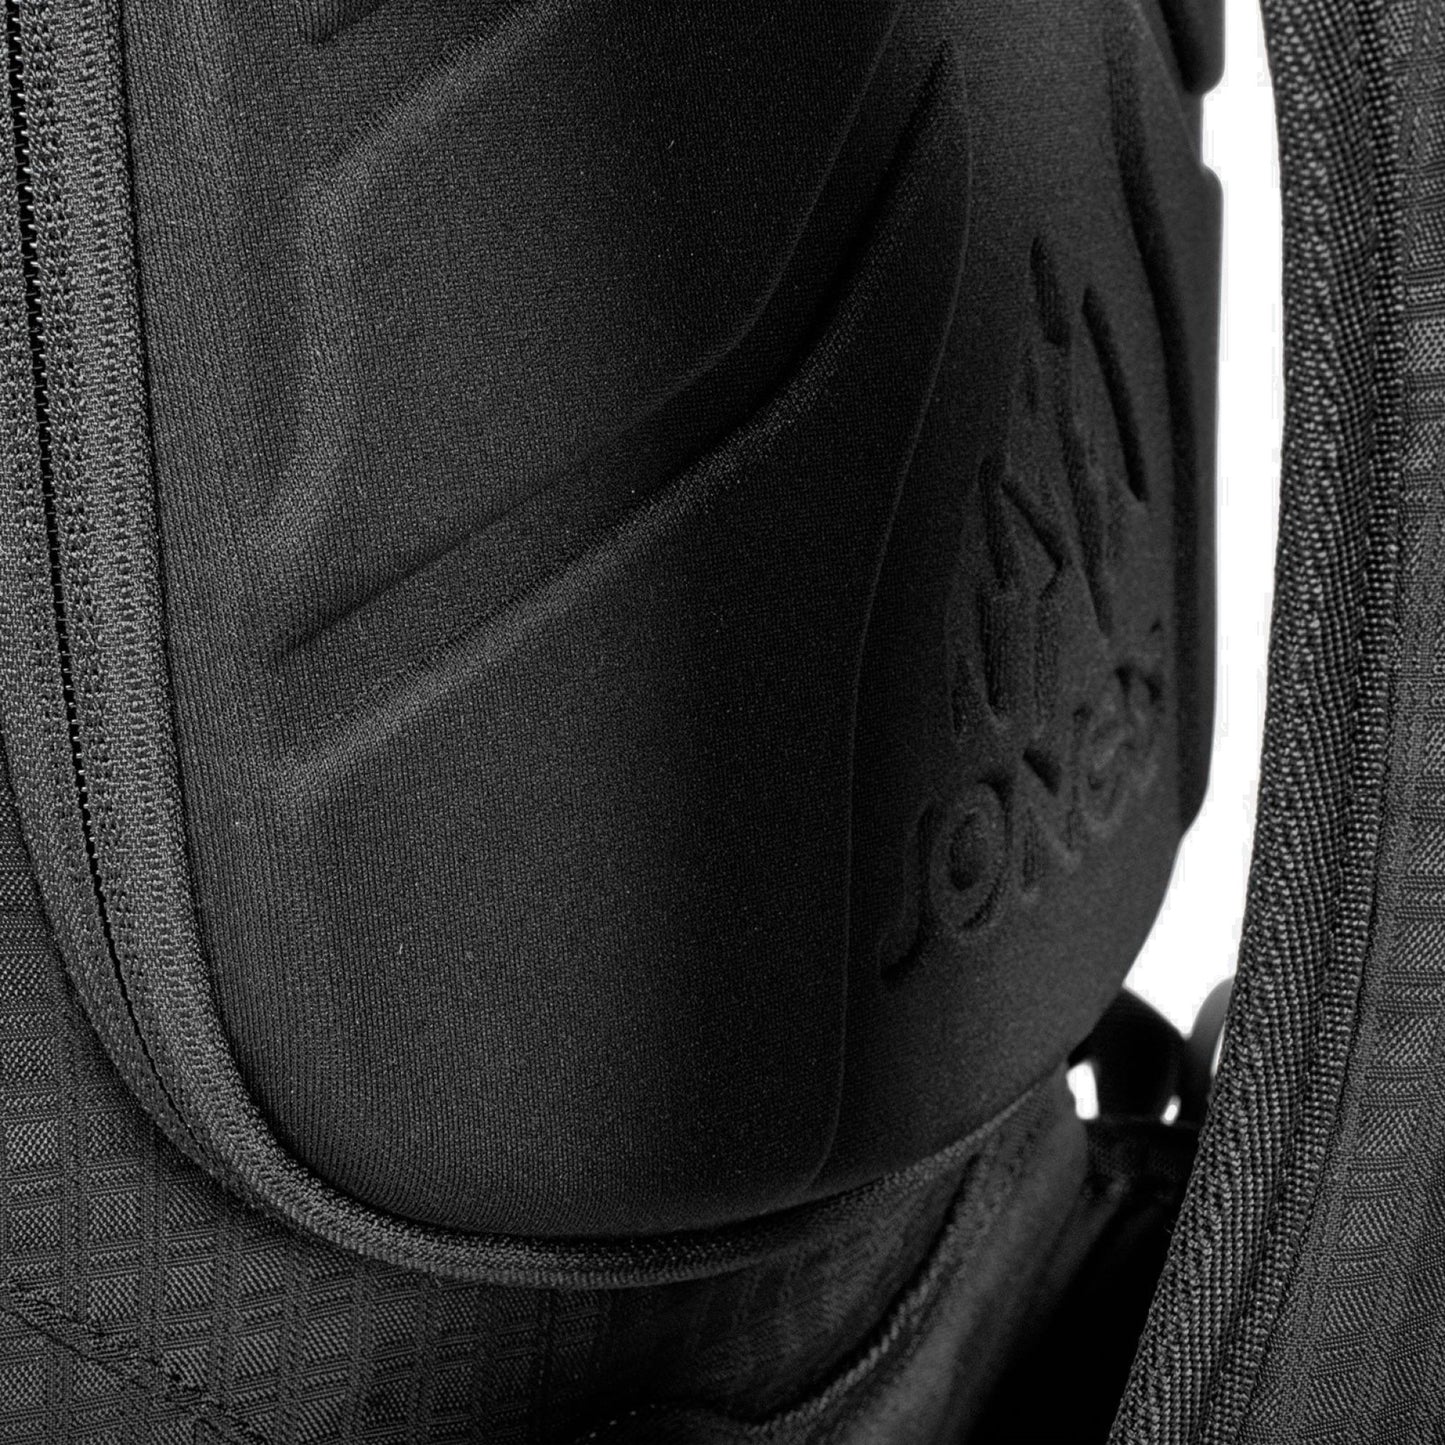 Jones Dscnt R.A.S 32L Backpack Black OS Backpacks